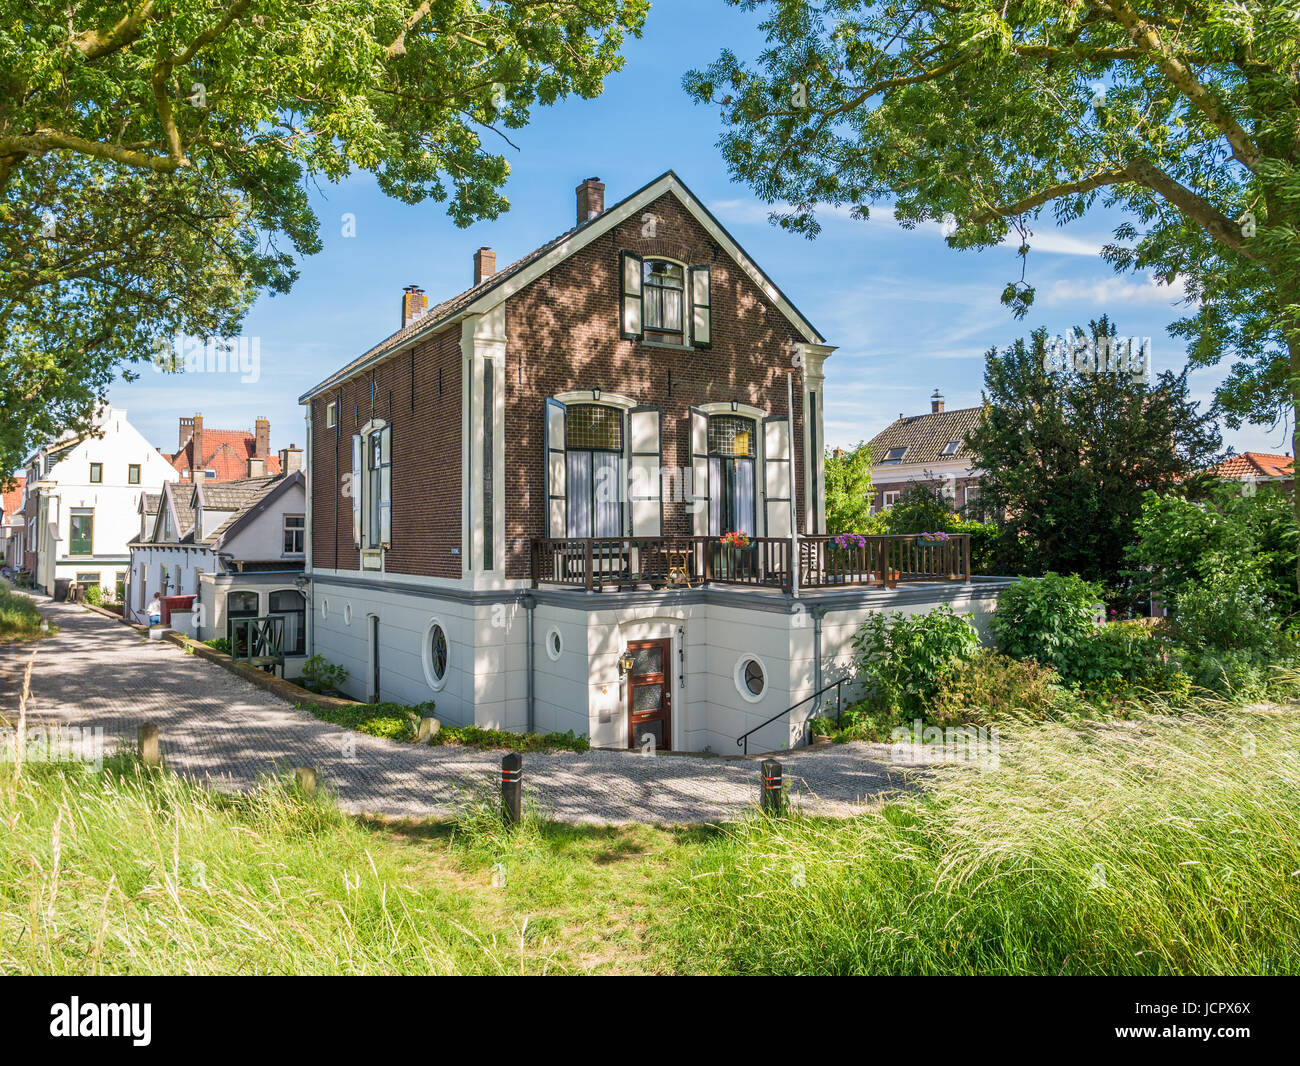 Hôtel particulier et rempart de la vieille ville fortifiée de Woudrichem, Brabant, Pays-Bas Banque D'Images